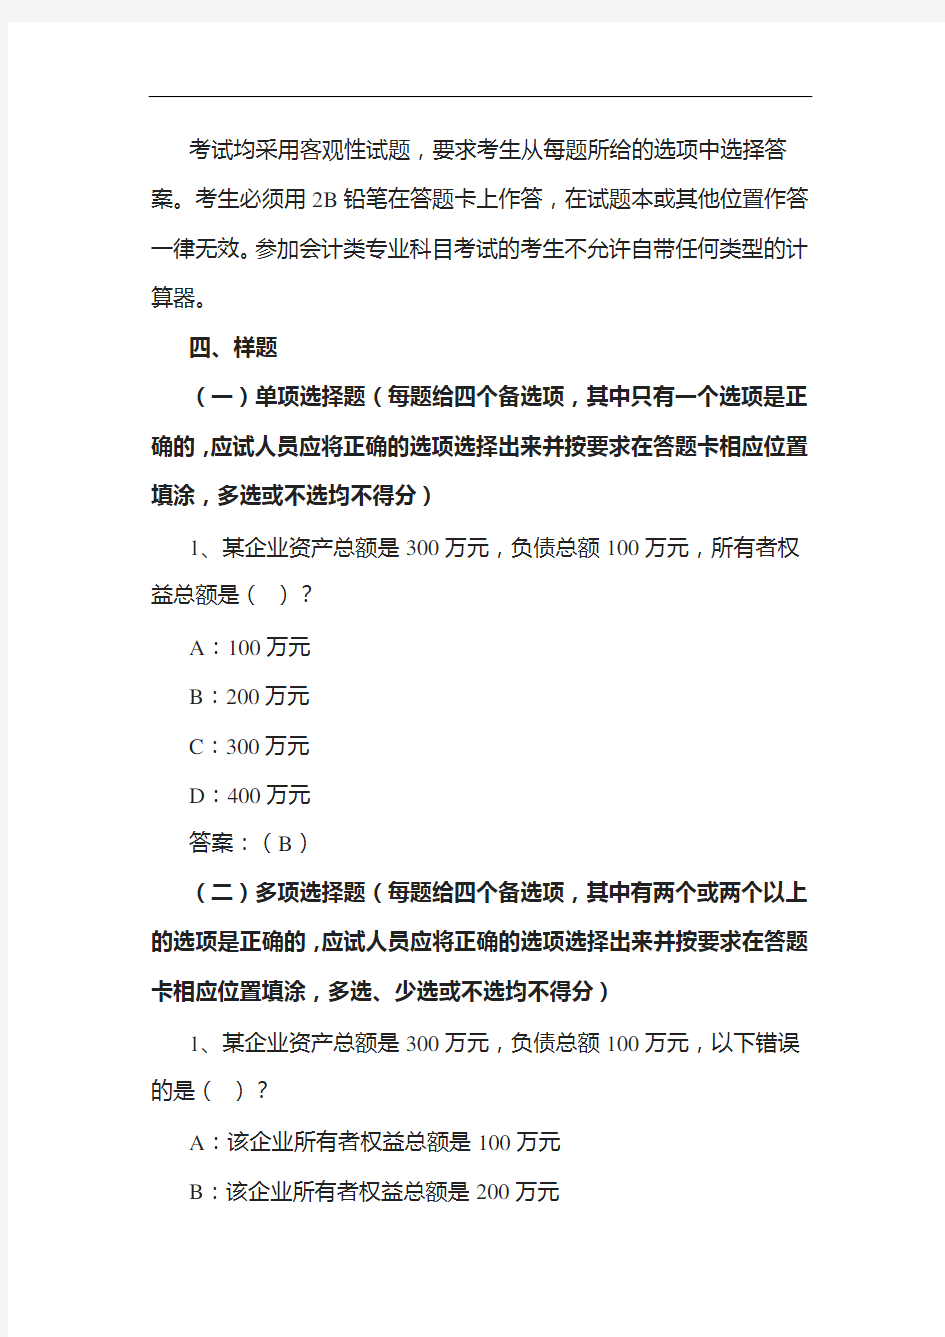 2021年度中国证监会招考职位专业科目笔试考试大纲(会计类)